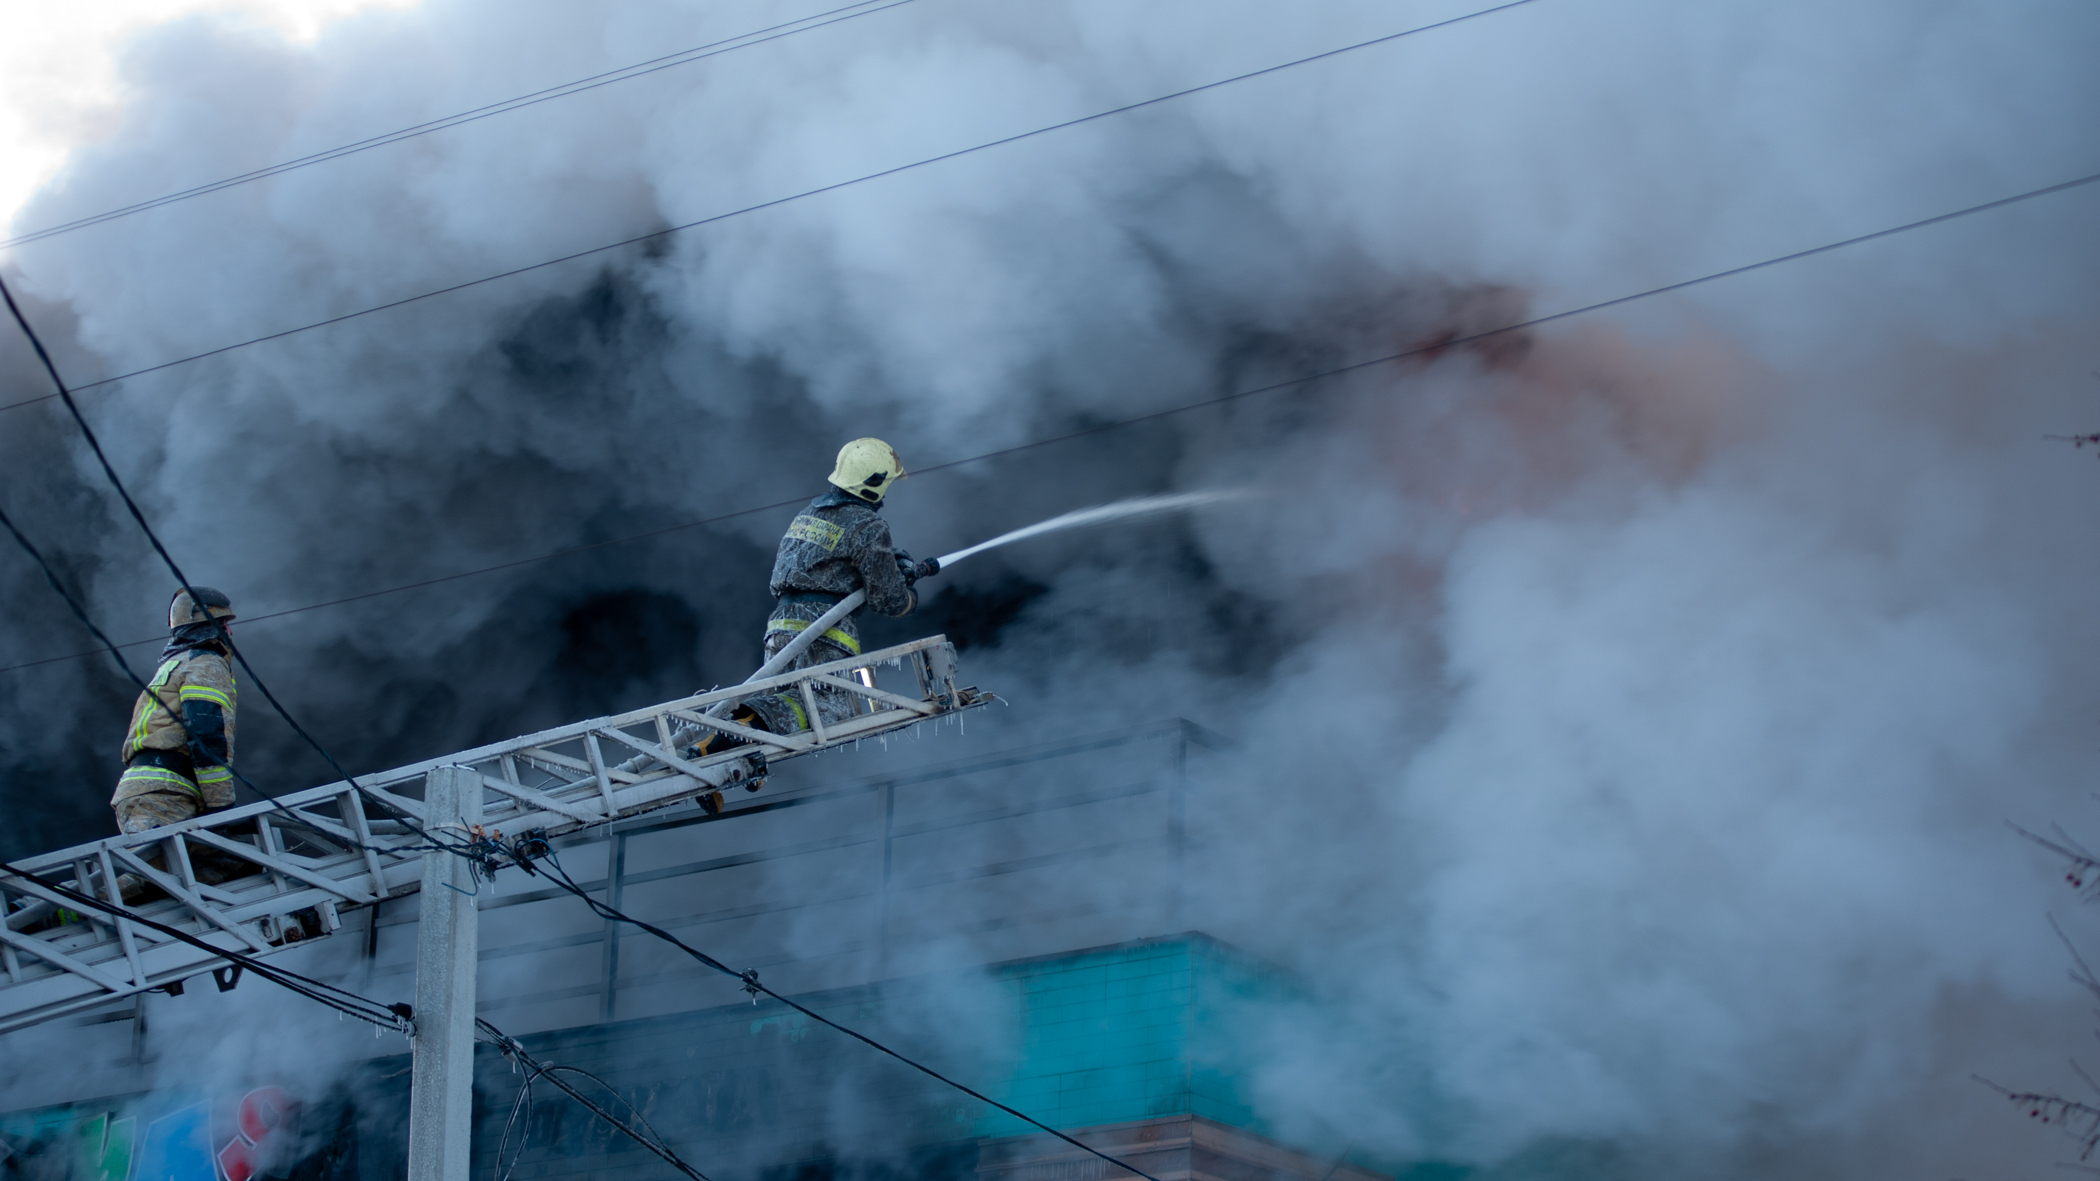 МЧС Удмуртии: 57% пожаров с гибелью людей происходят из-за курения в нетрезвом виде